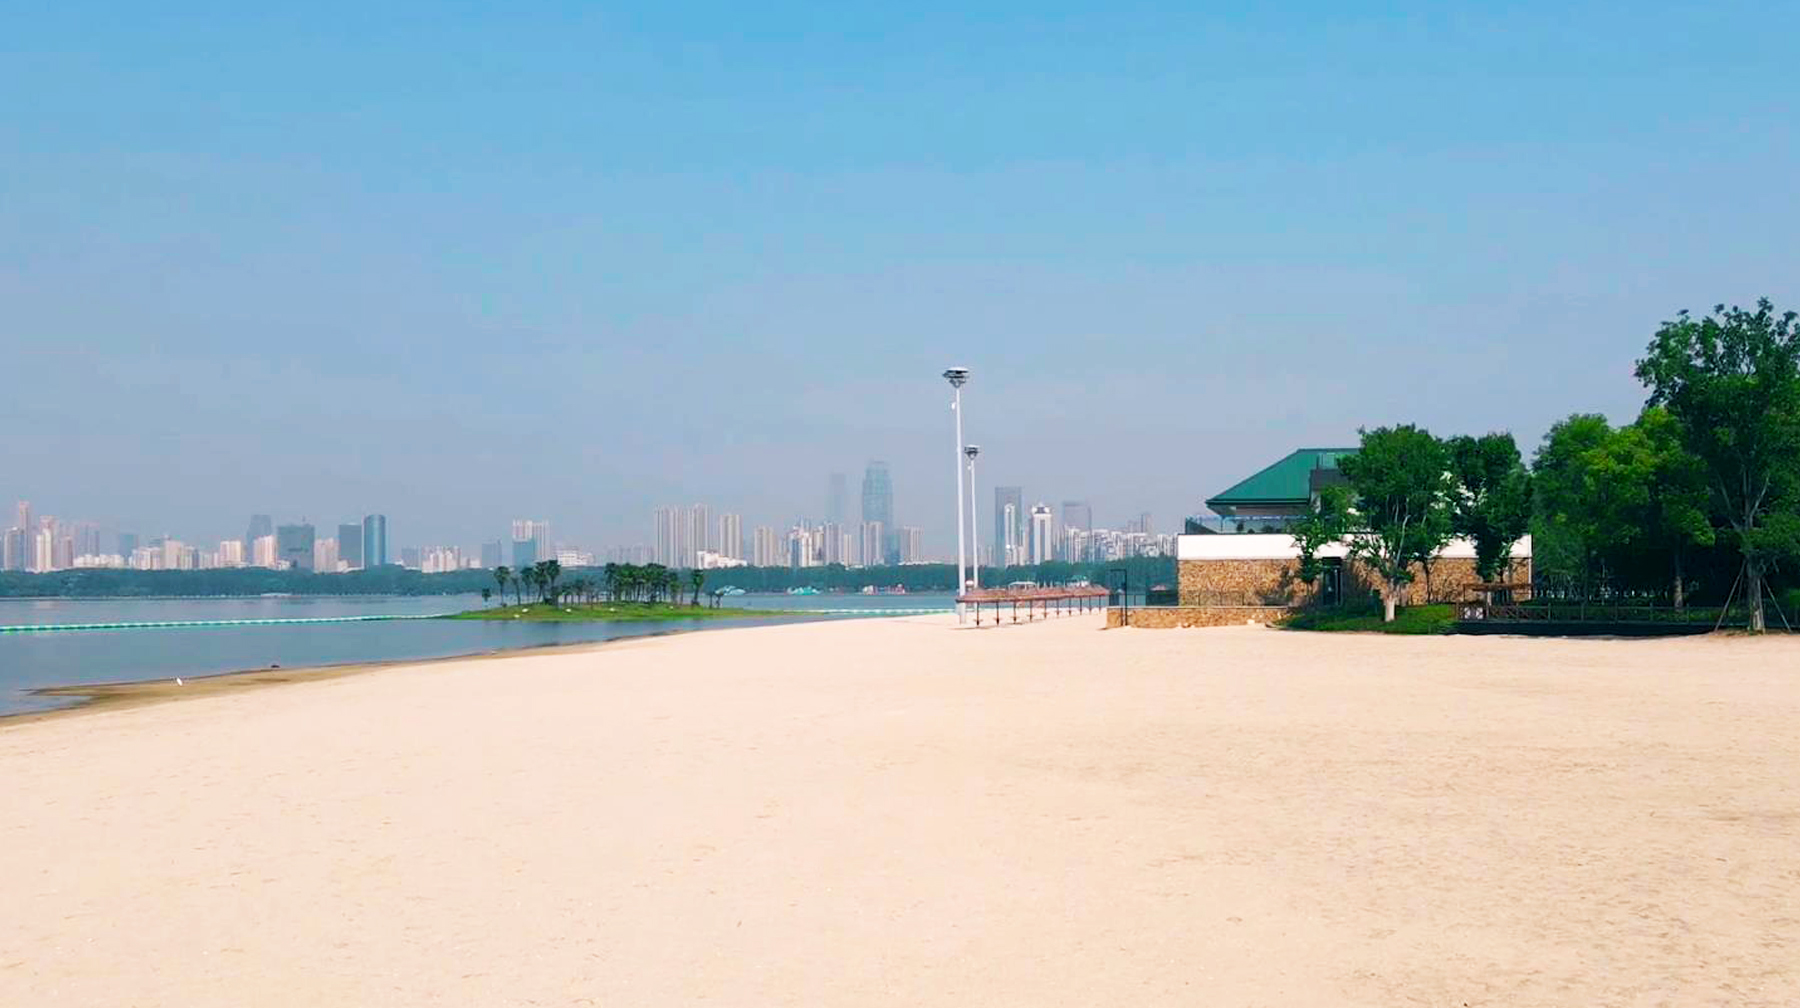 六月游武汉，在城区发现一座海滨风情沙滩，玩水玩沙踏浪歌唱